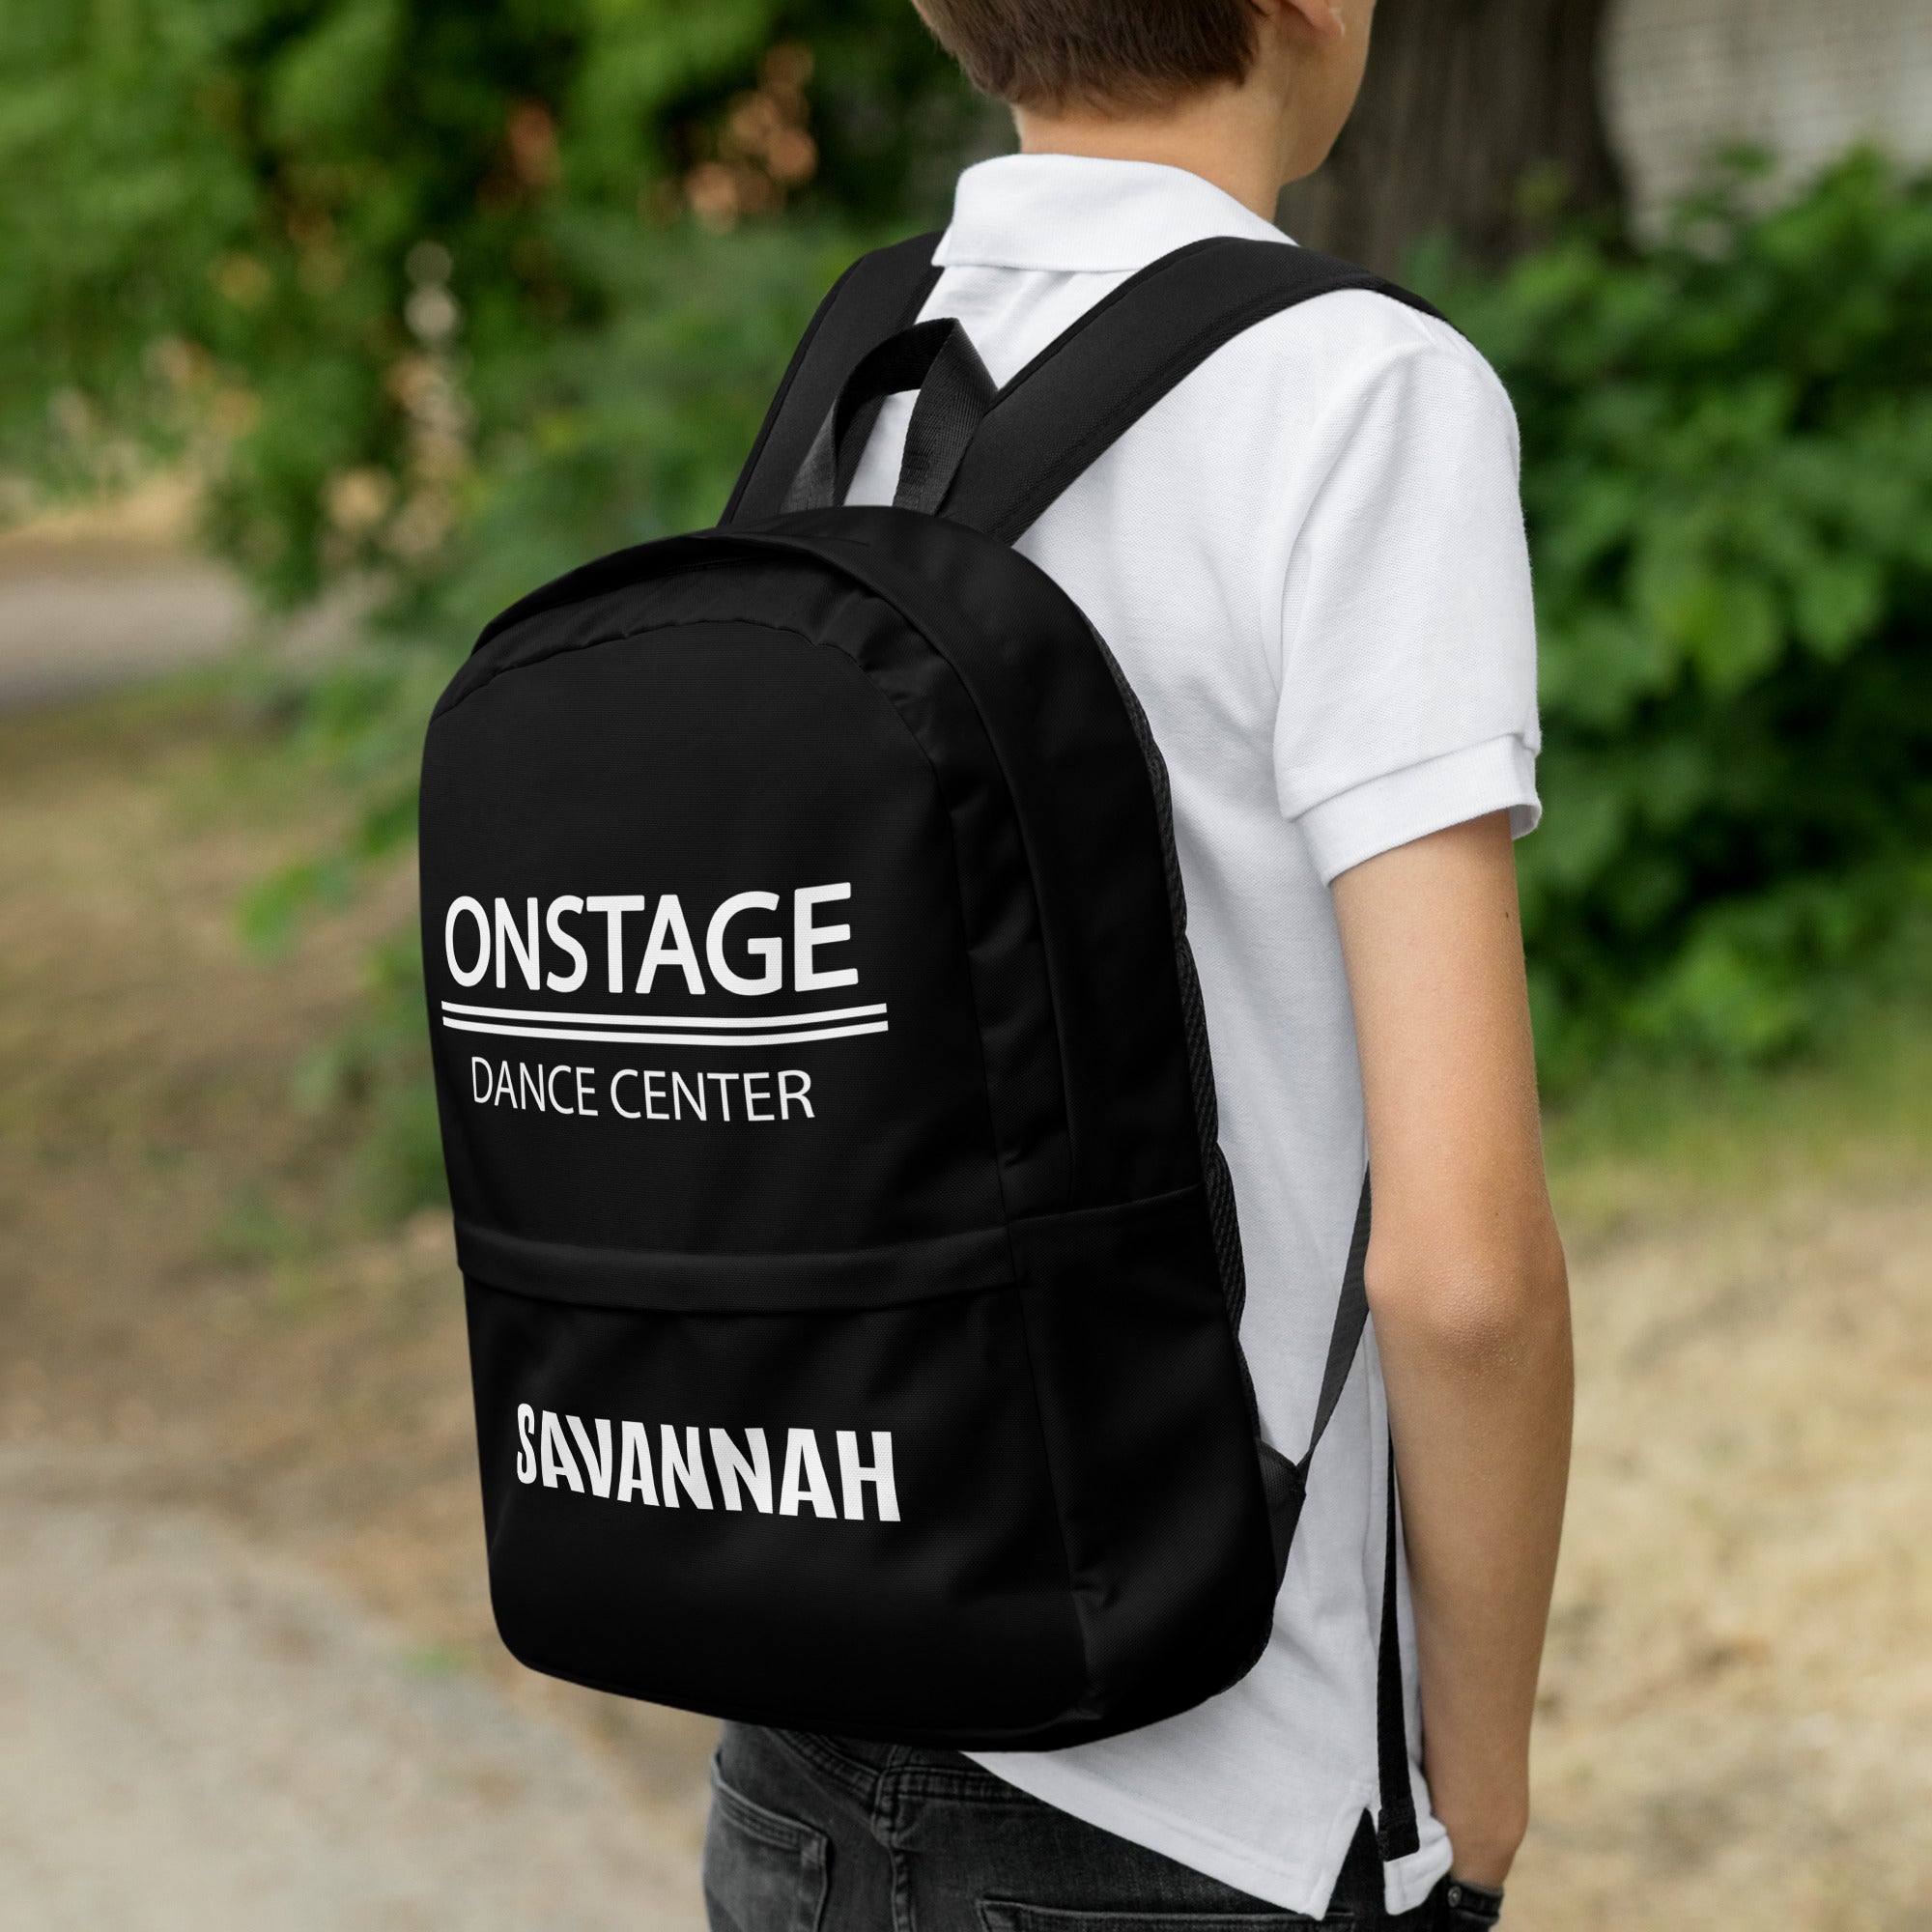 SAVANNAH ONSTAGE Backpack